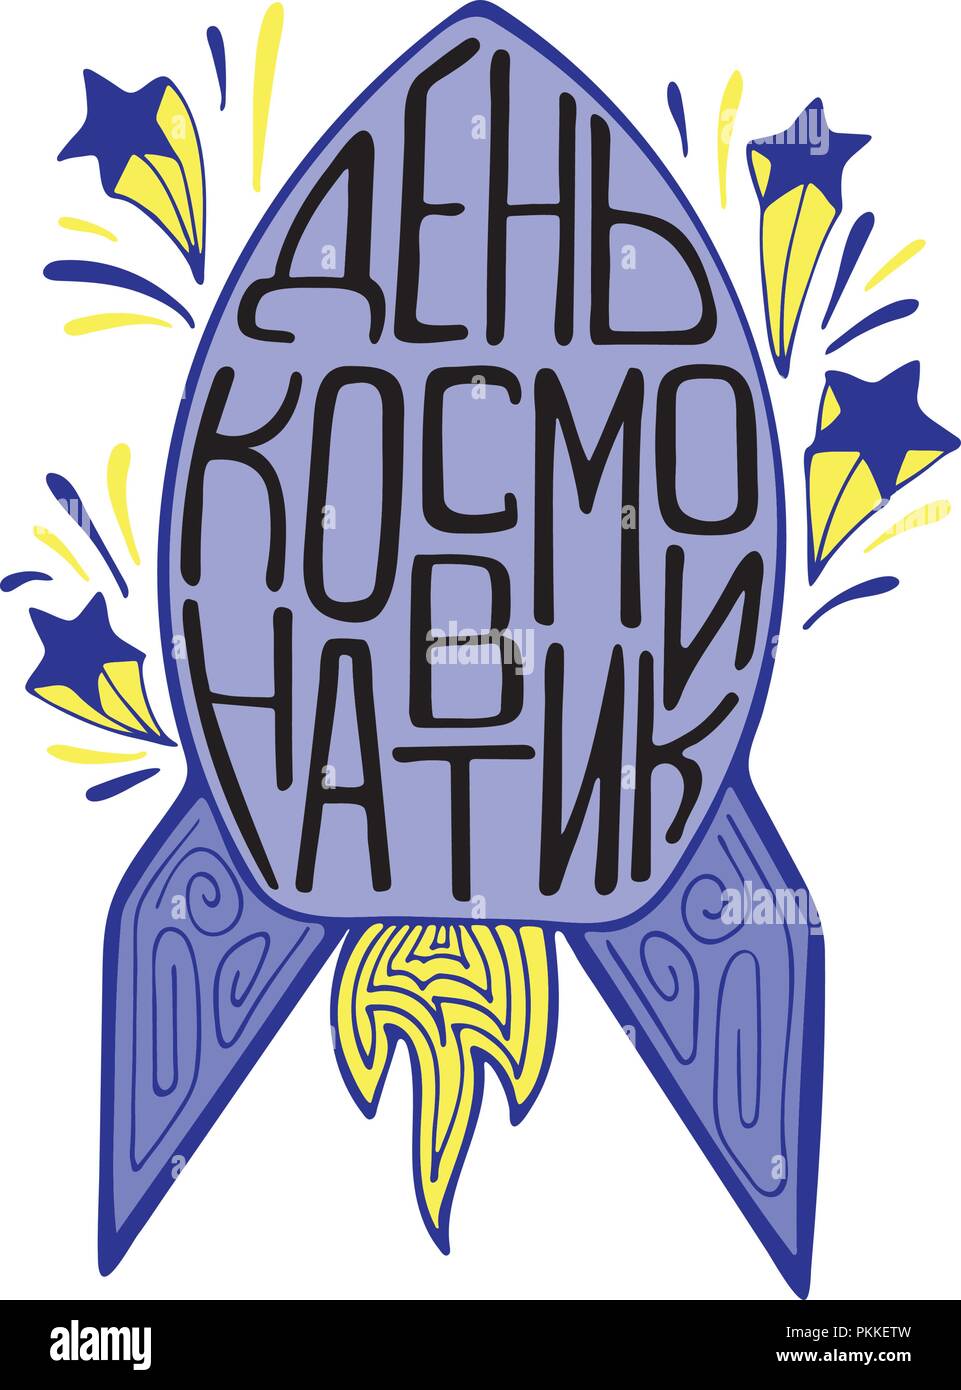 Carino a razzo con disegnati a mano scritte in russo sulla data di astronautica - День космонавтики. Illustrazione Vettoriale